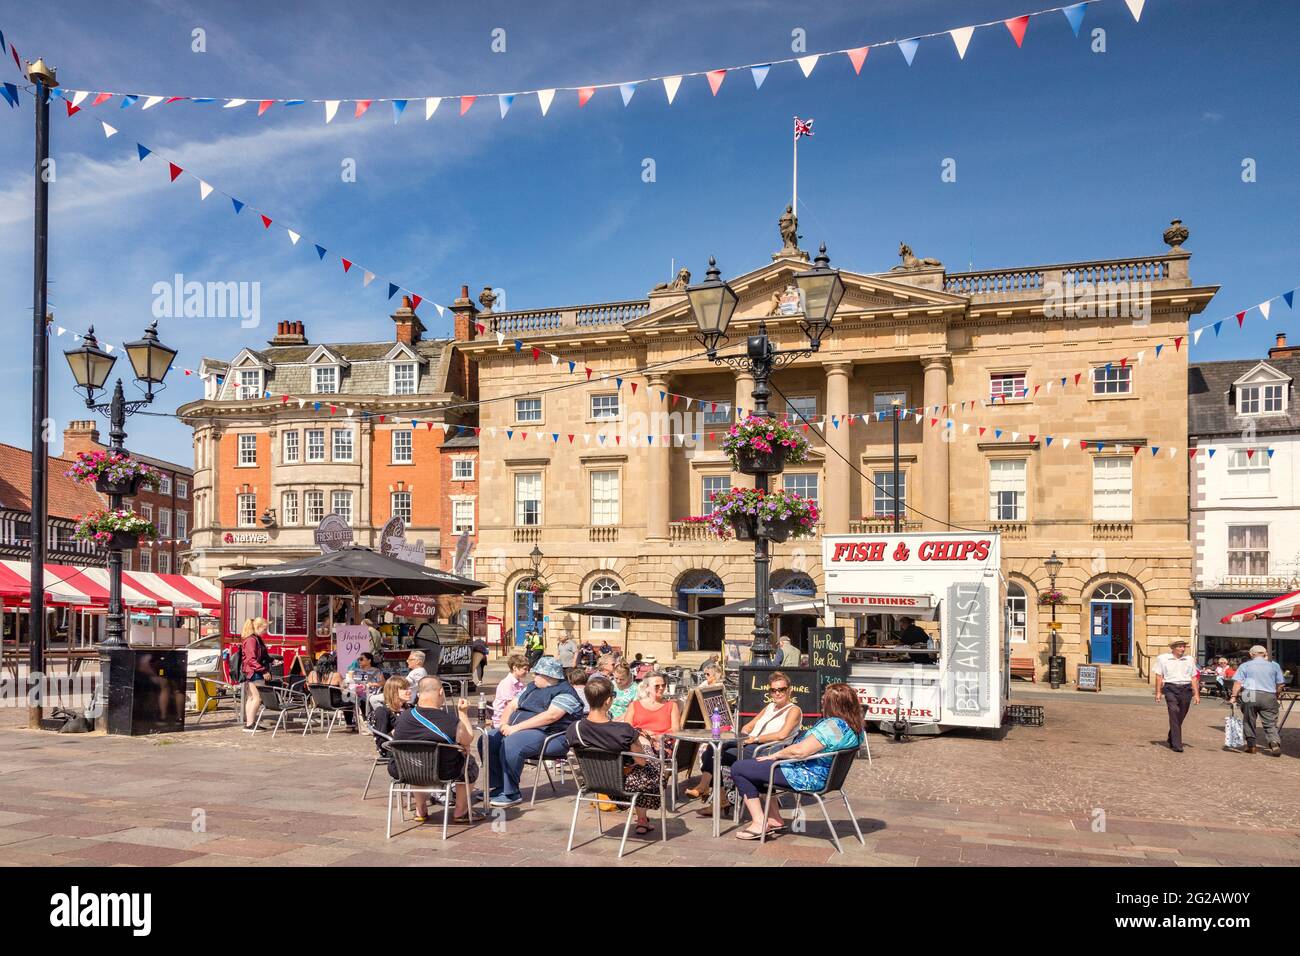 4 juillet 2019 : Newark on Trent, Nottinghamshire, Royaume-Uni - les gens boivent du café dans un café de la place du marché historique, avec l'hôtel de ville derrière. Banque D'Images